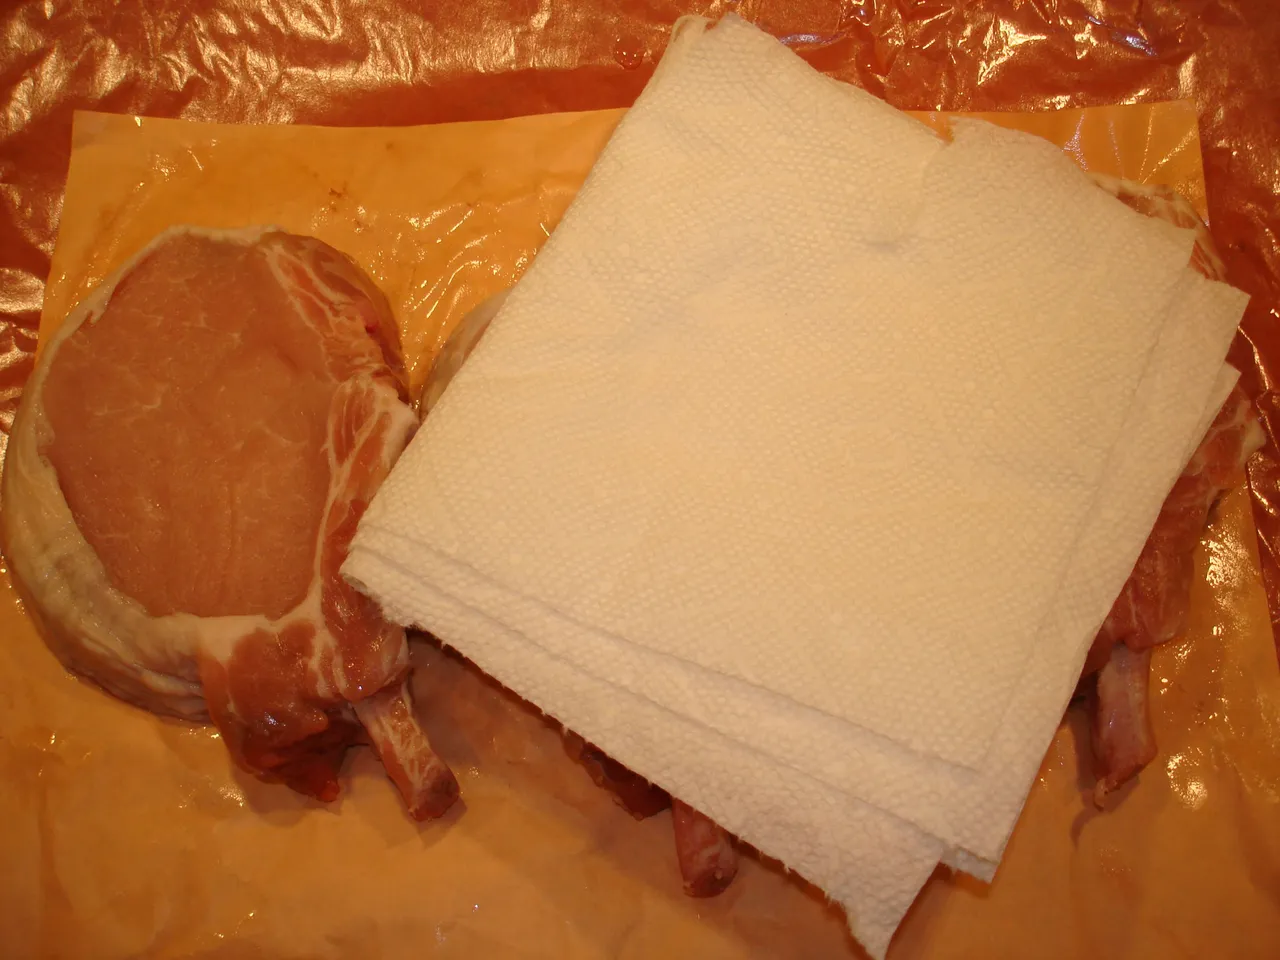 pork_chop_paper_towel.JPG